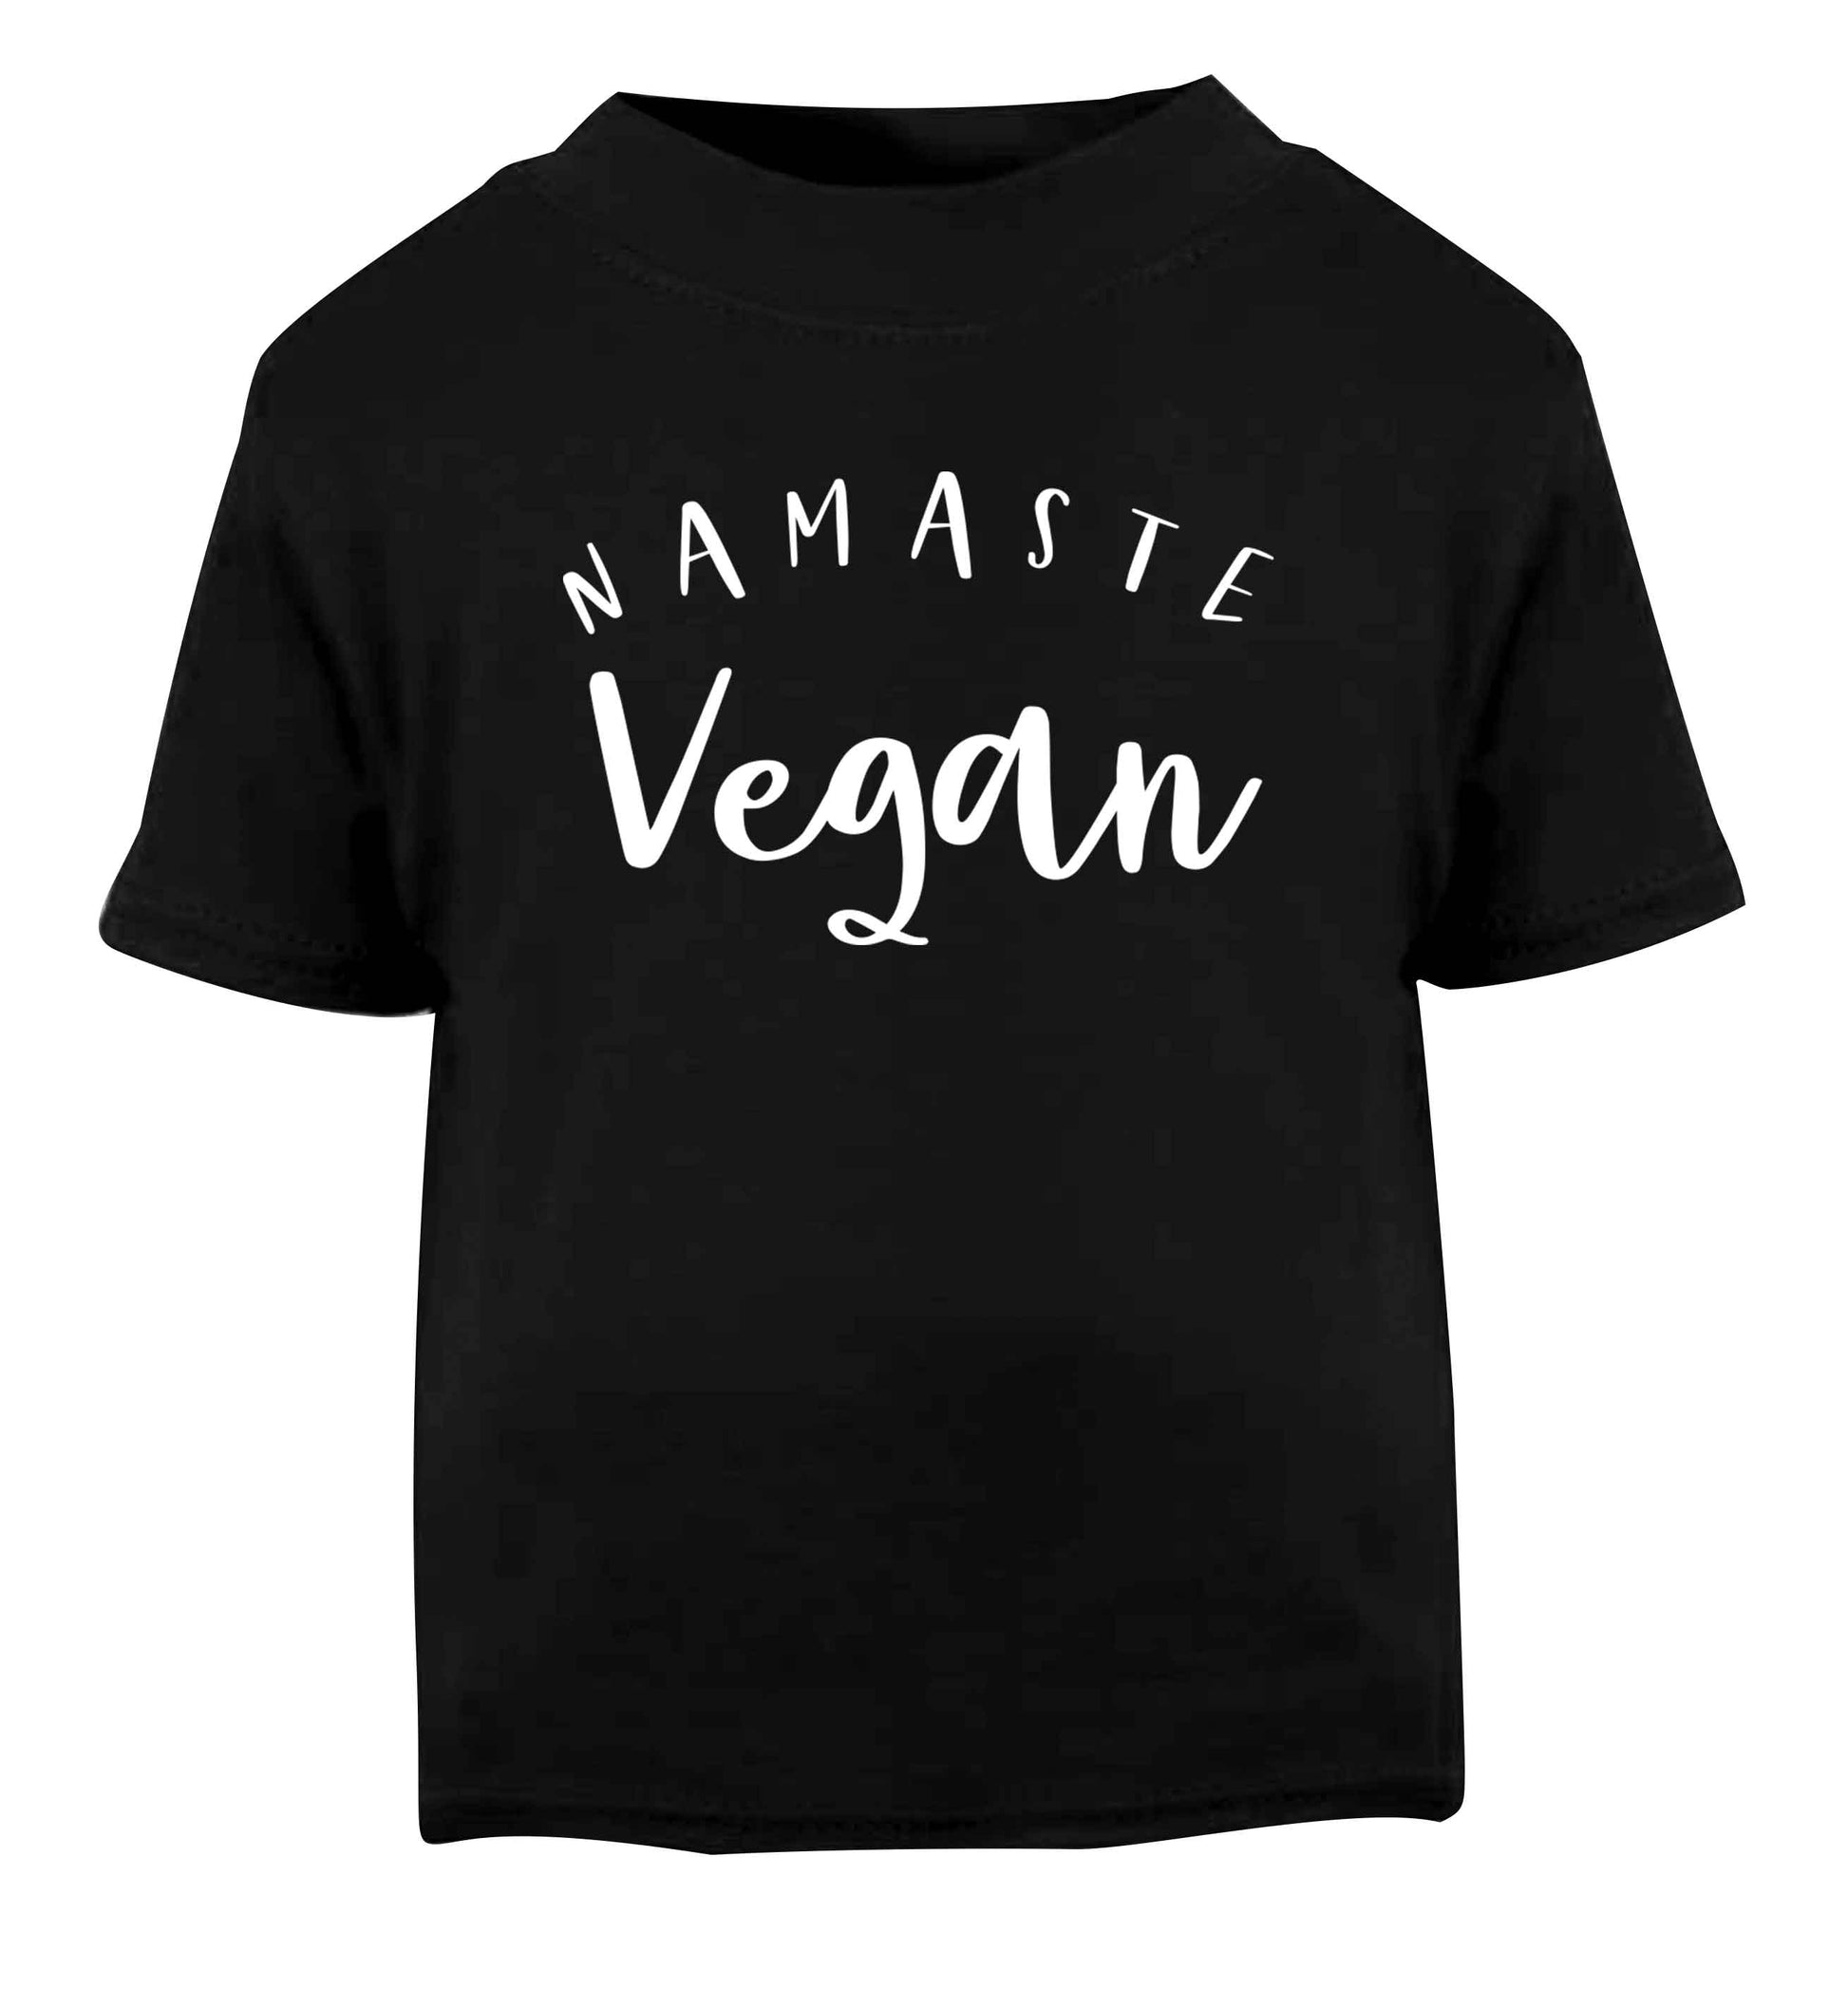 Namaste vegan Black Baby Toddler Tshirt 2 years